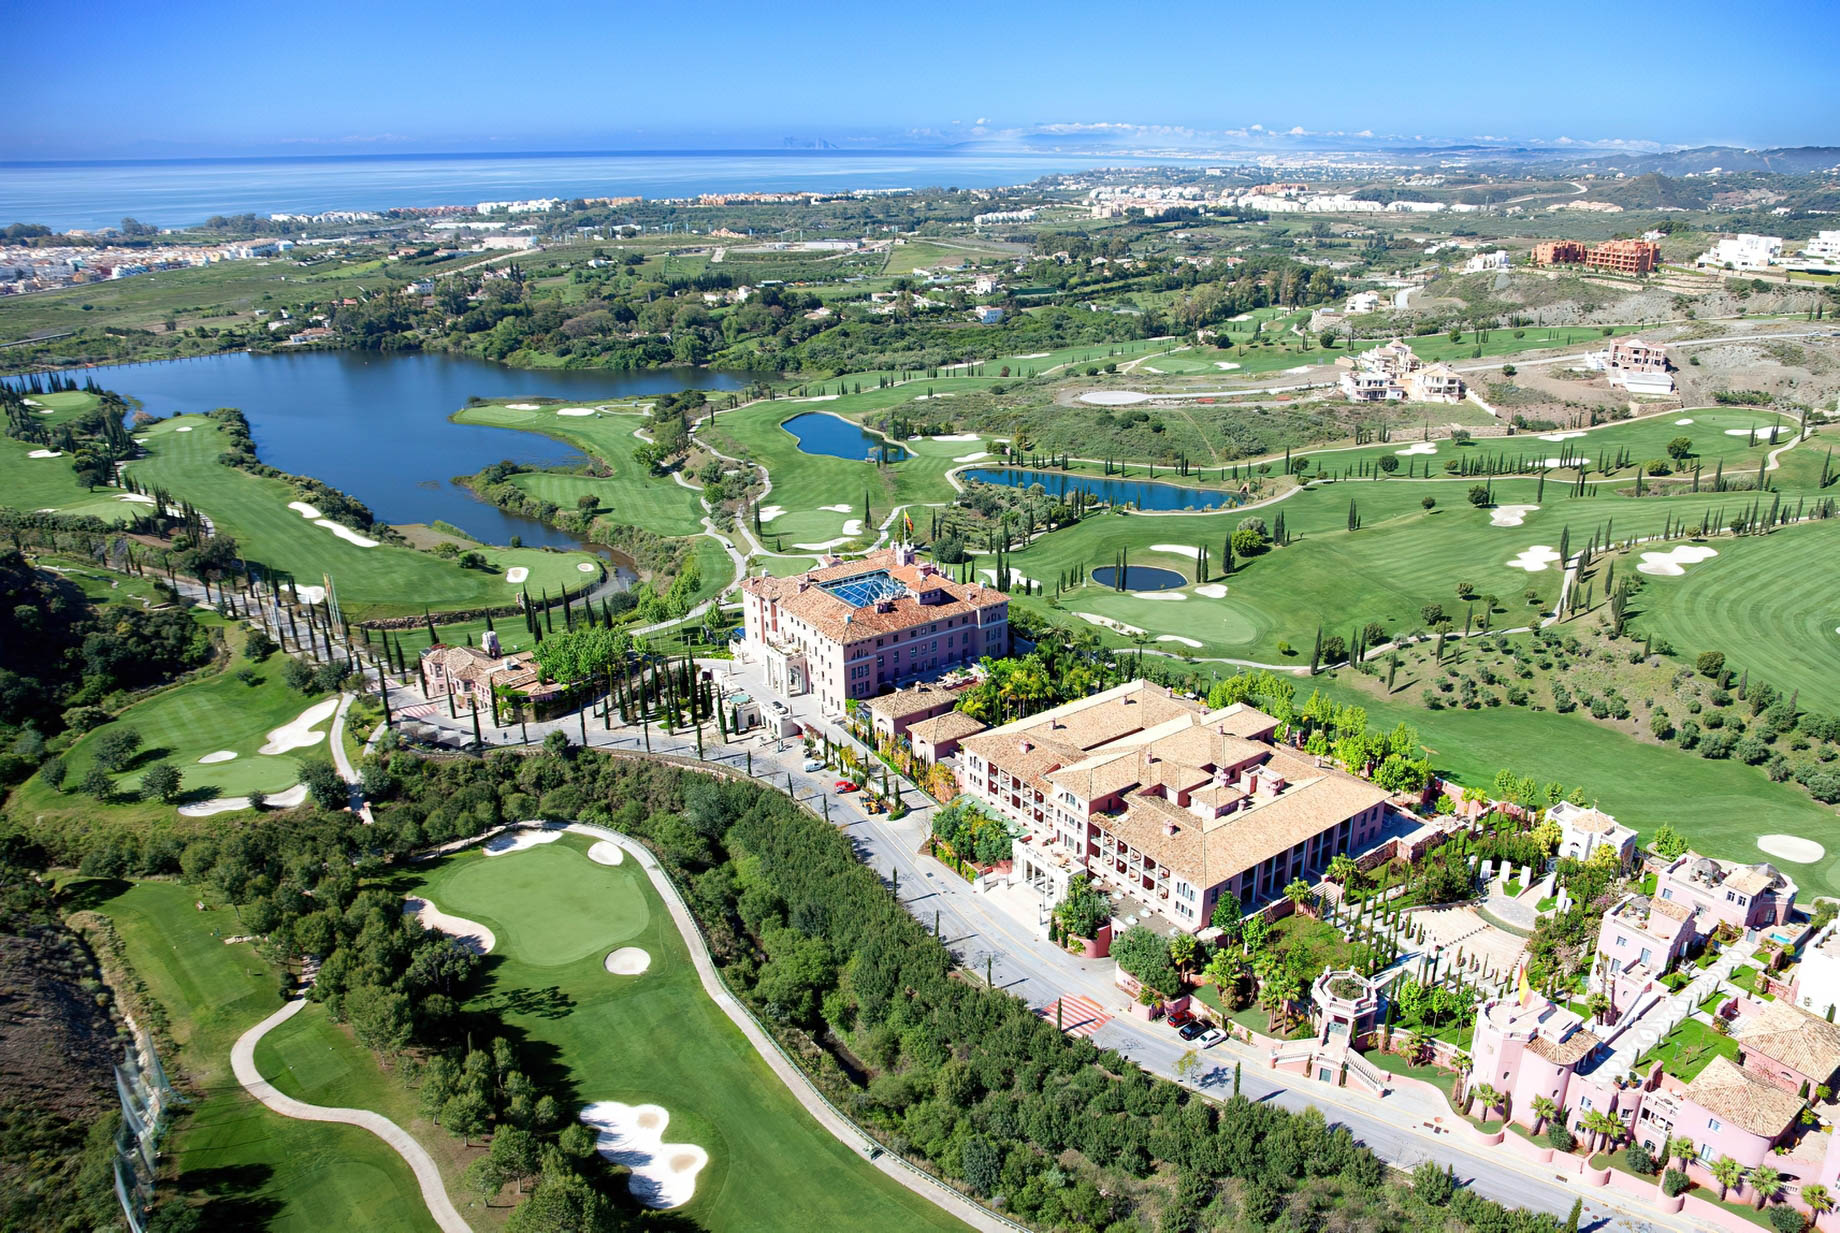 Anantara Villa Padierna Palace Benahavís Marbella Resort - Spain - Aerial View